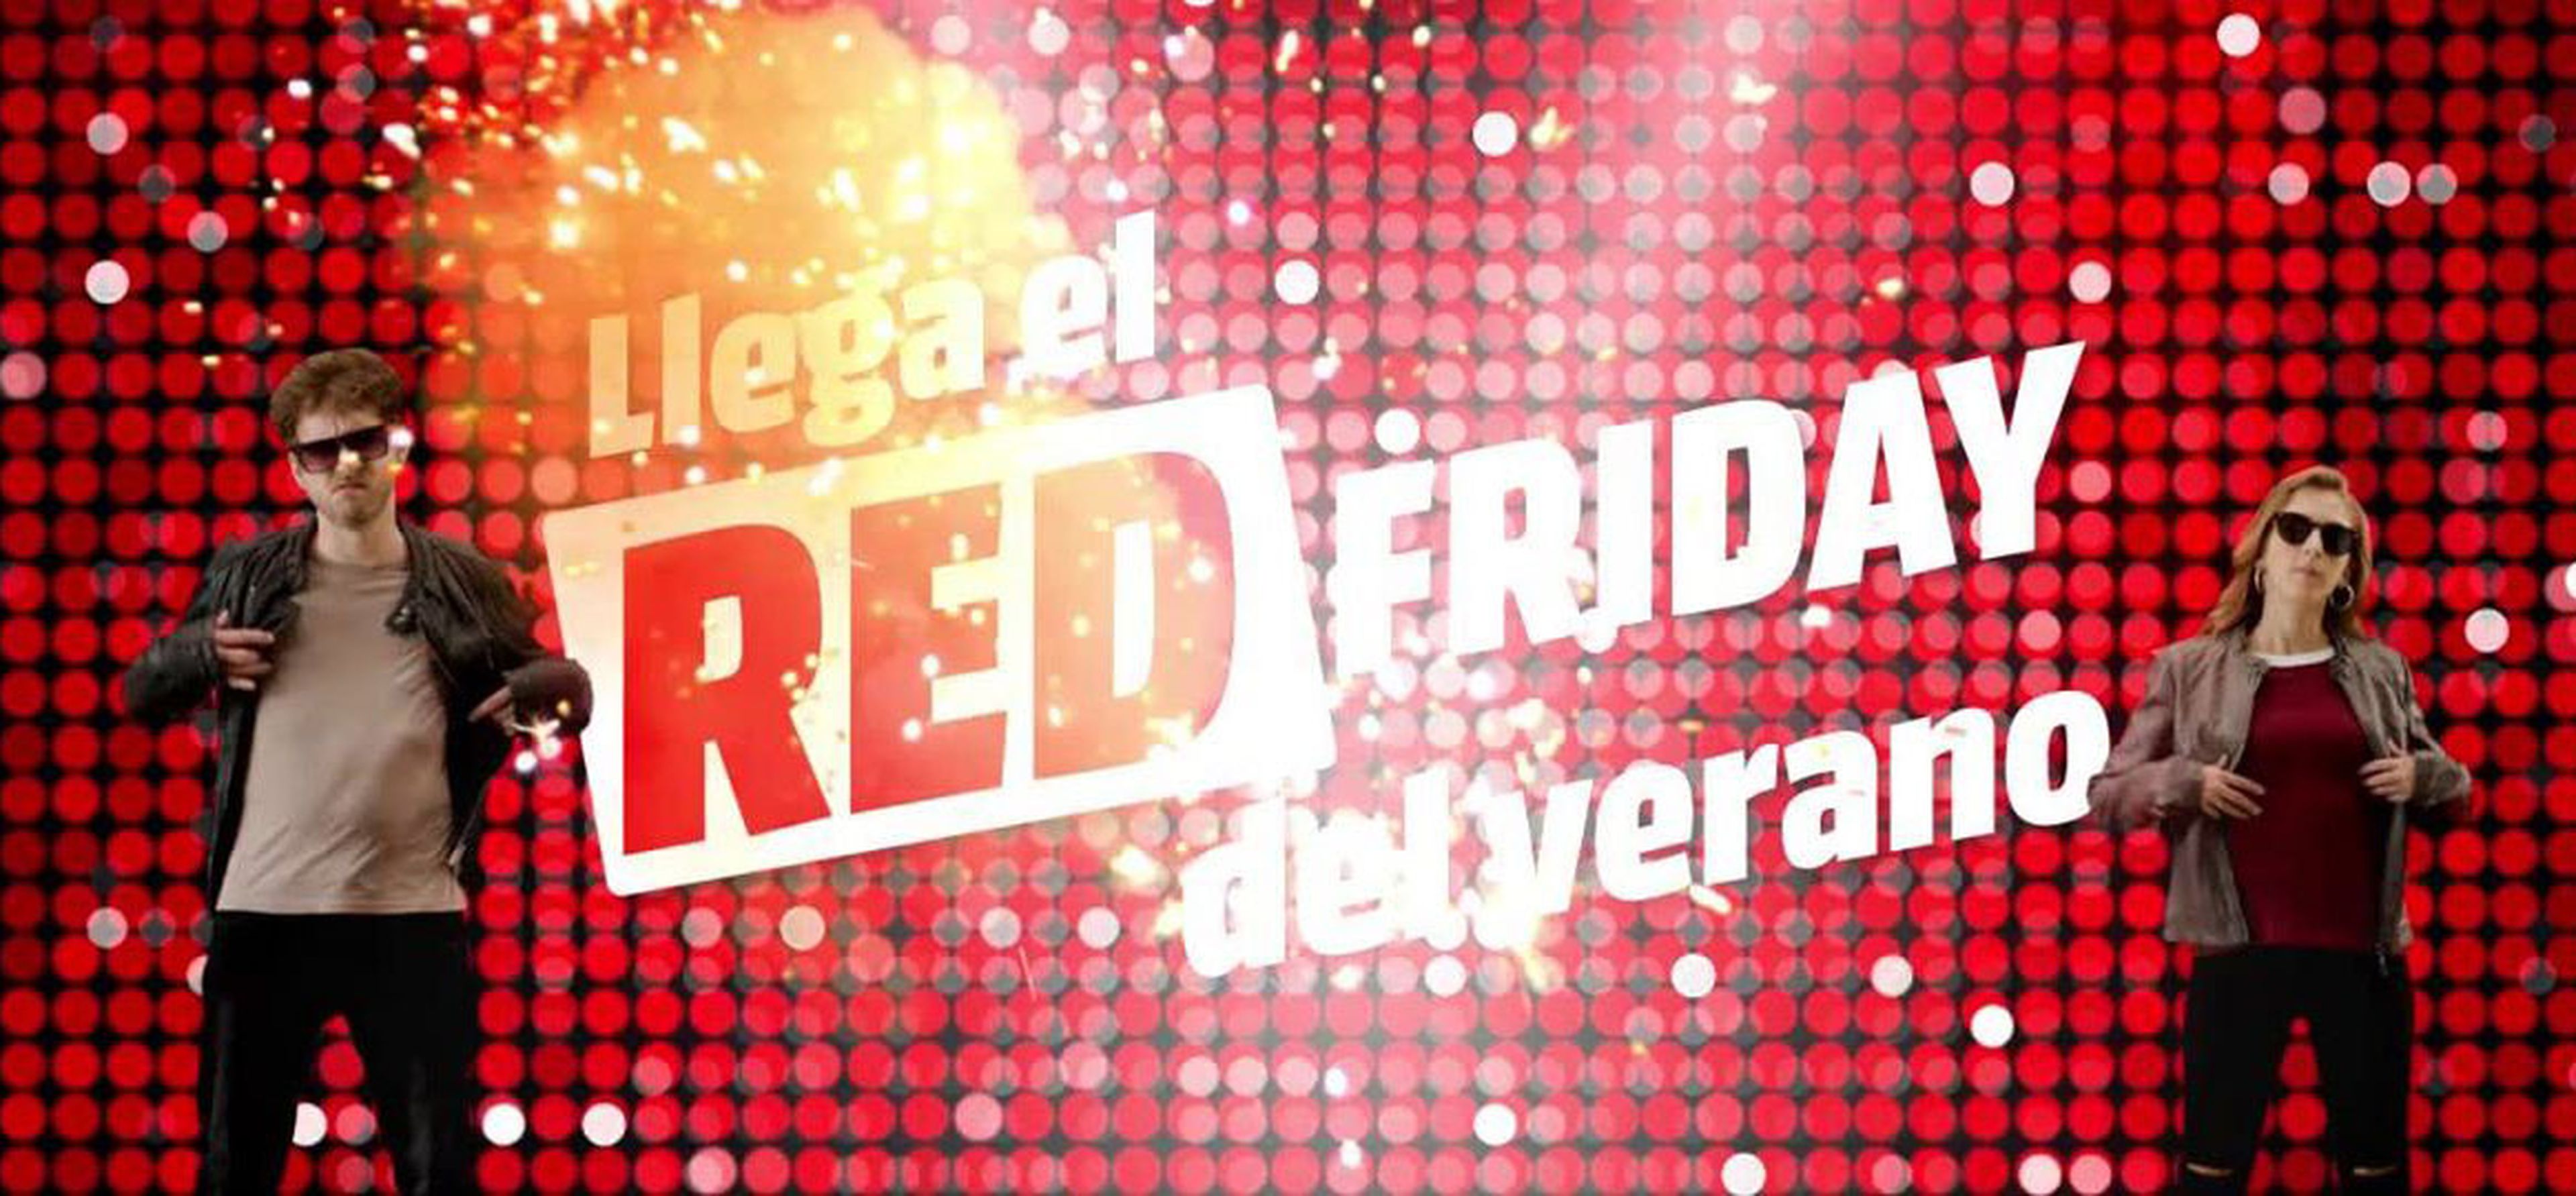 fysiek residentie kijken Red Friday de Media Markt, llega el Black Friday del verano | Computer Hoy